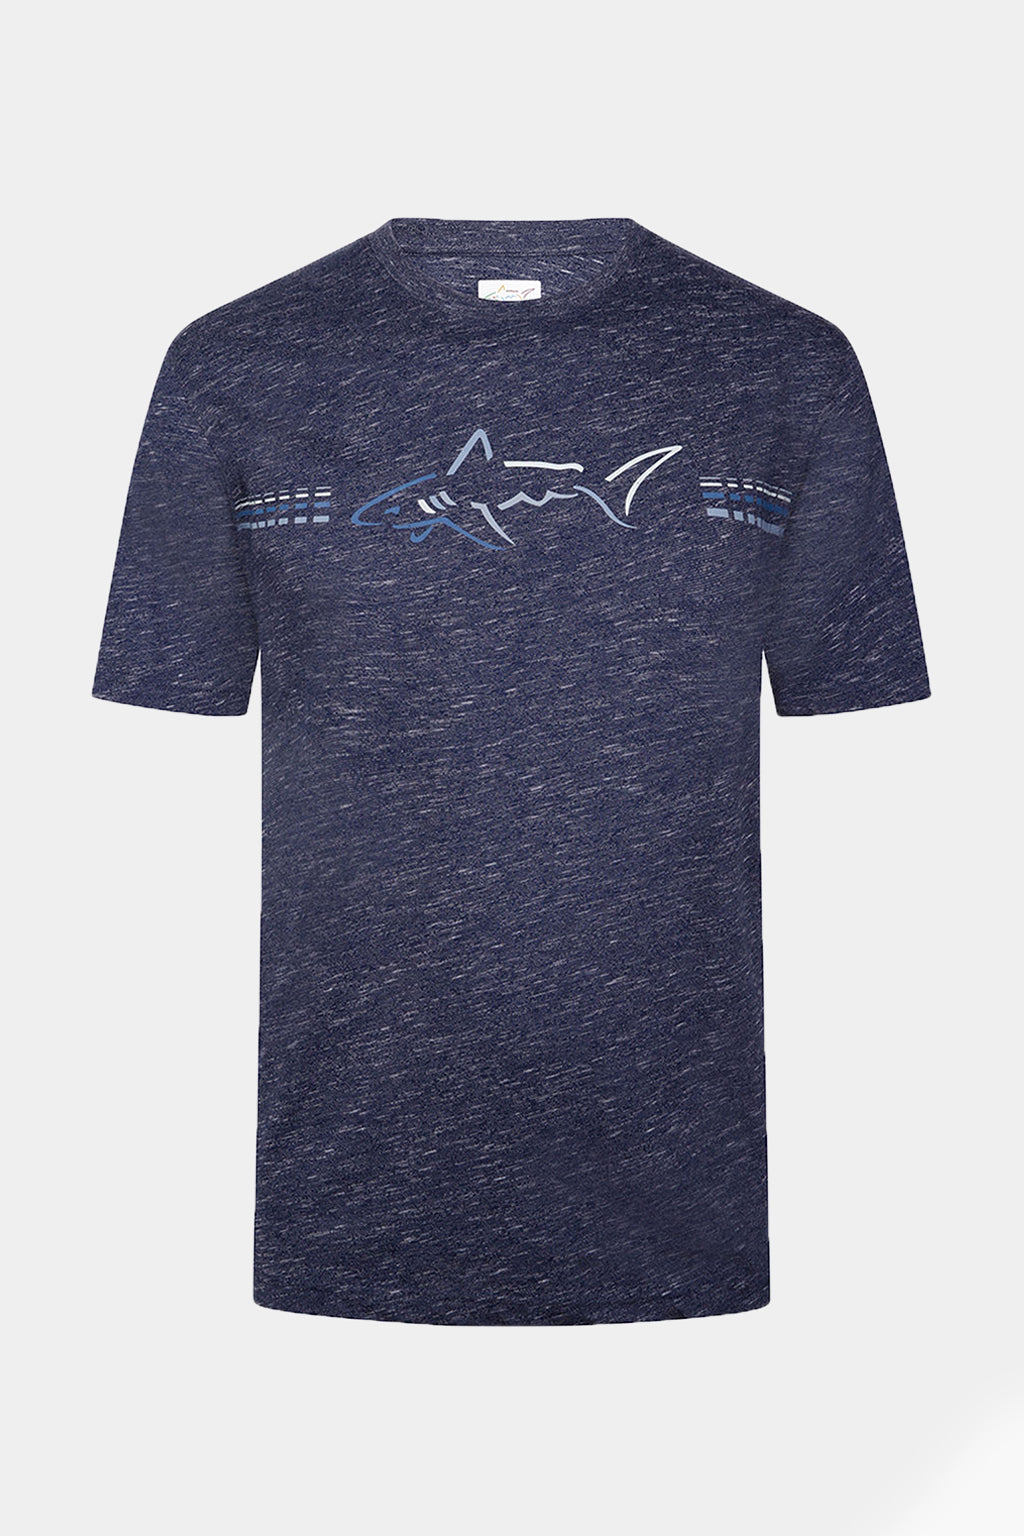 Gregnorman - Ultra-Comfort Shark T-Shirt